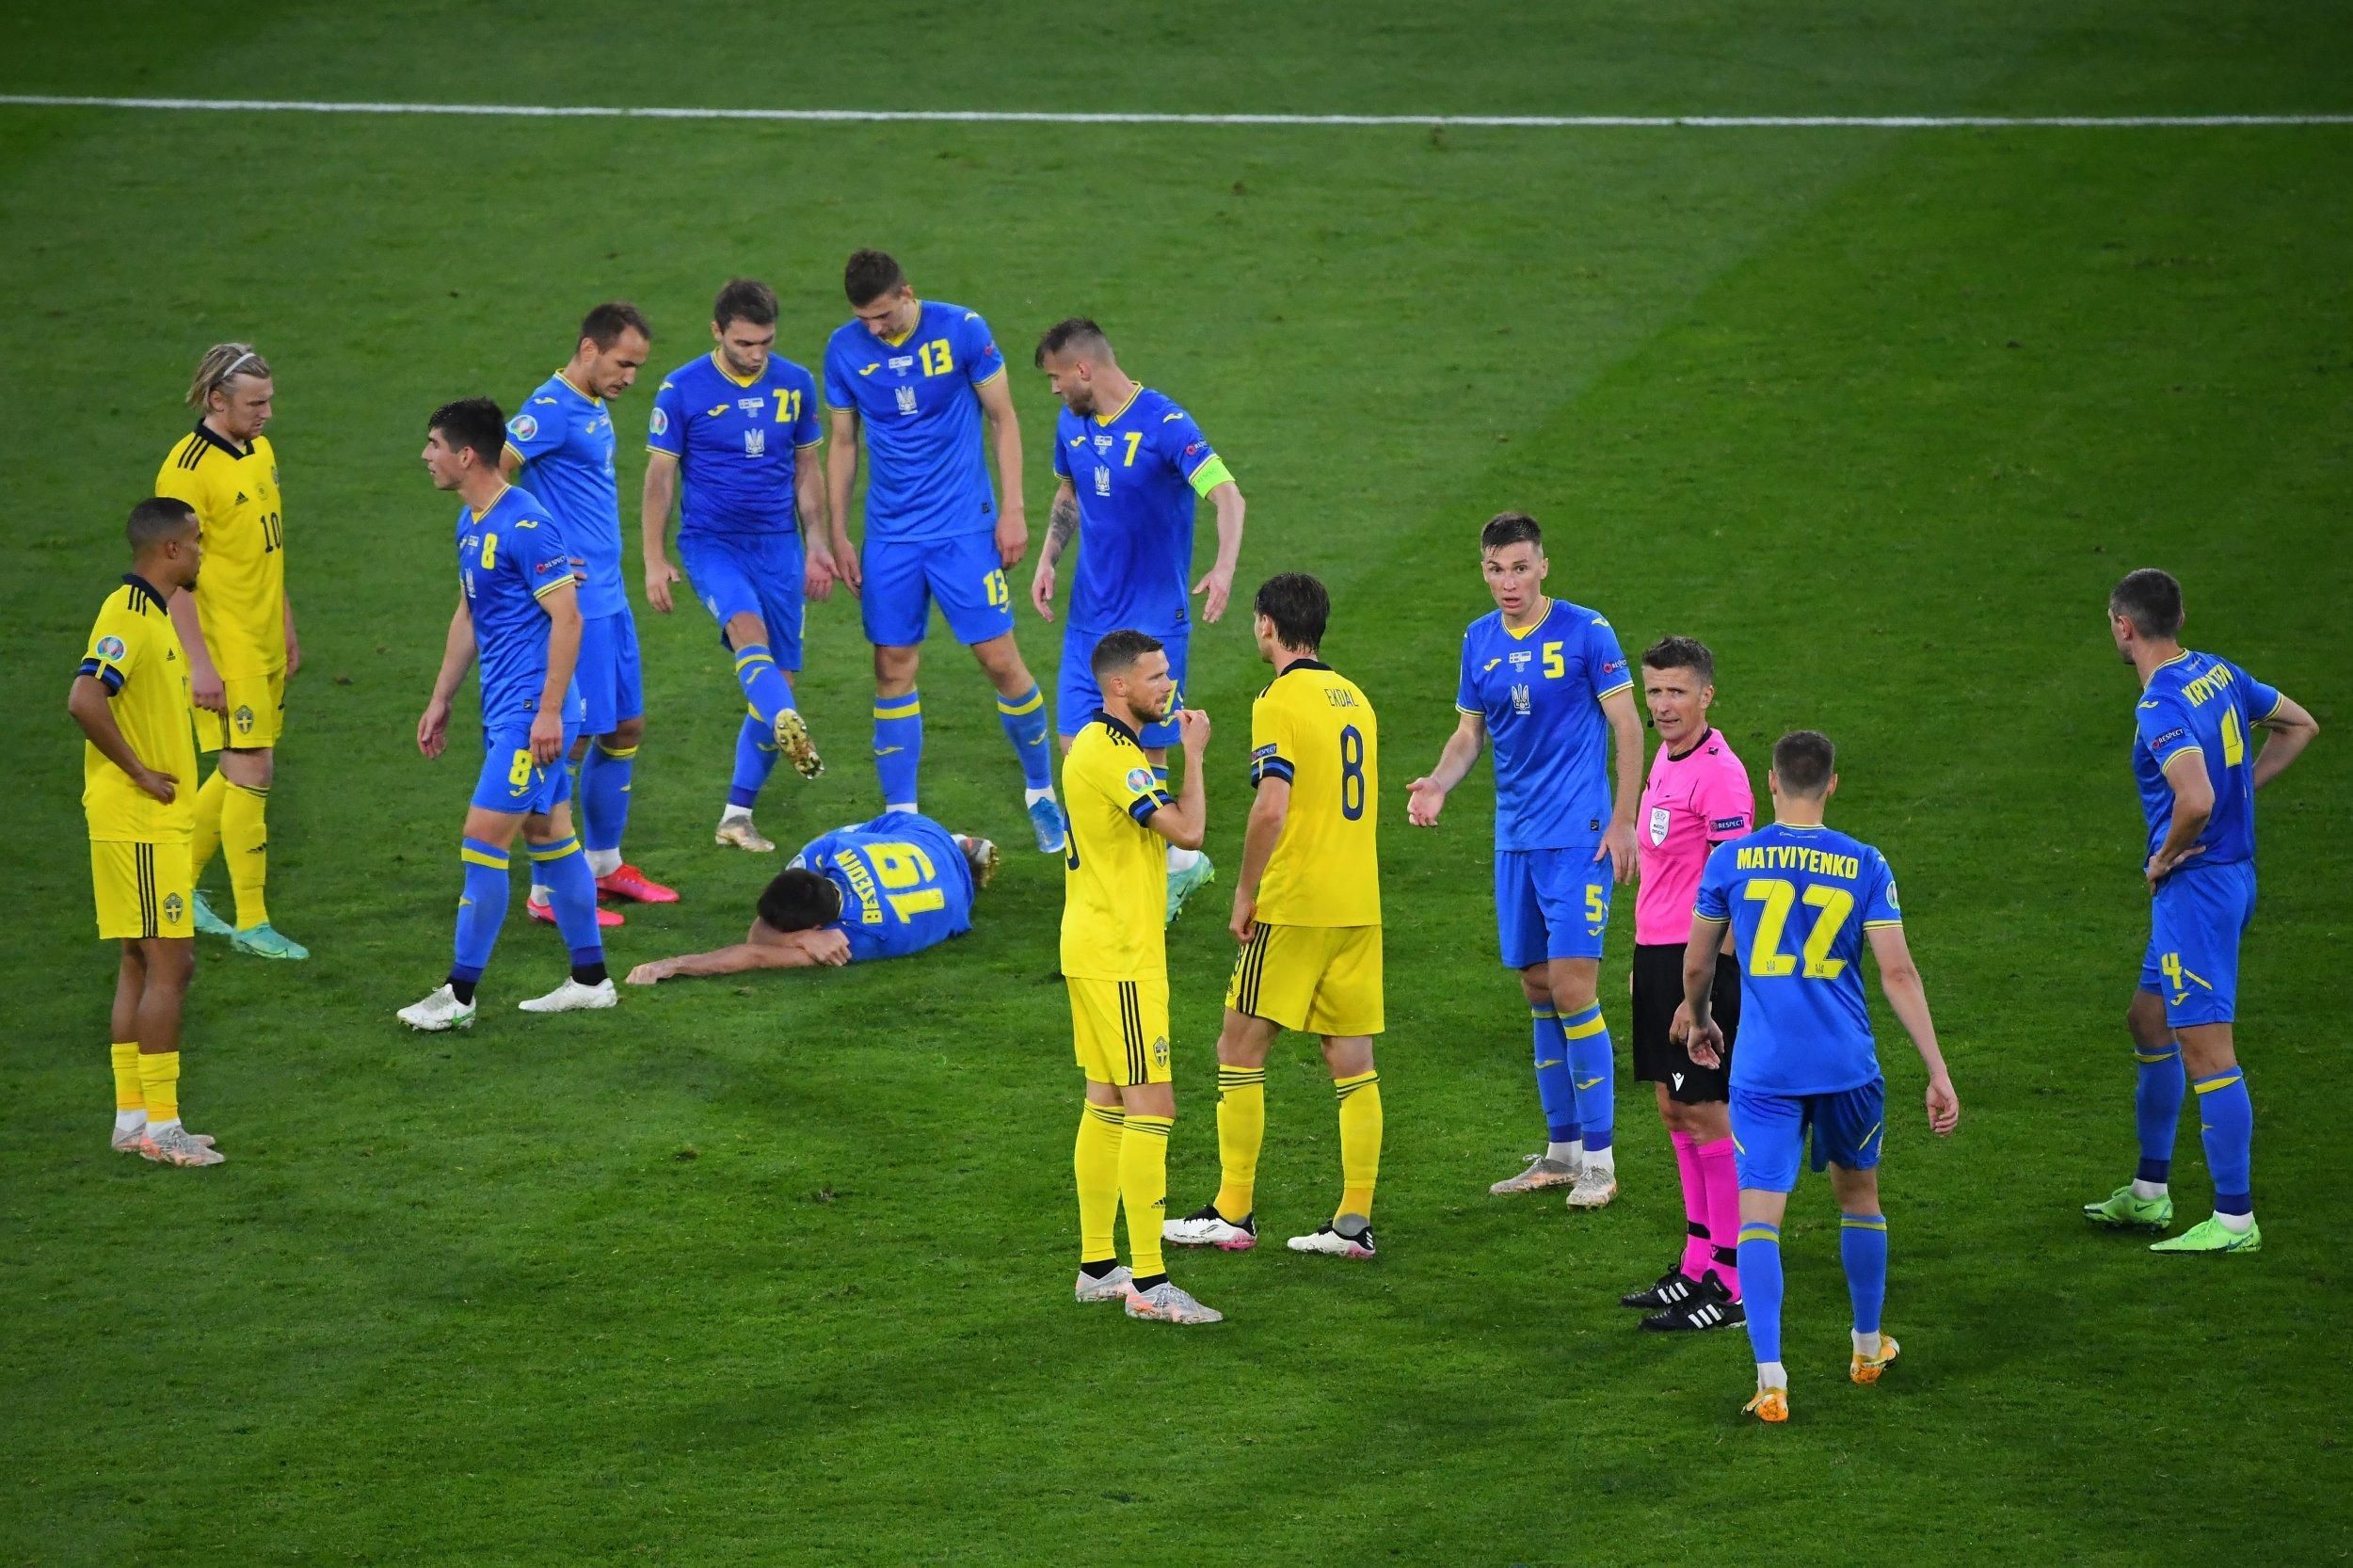 Травма Беседина на Евро 2020 – что известно о состоянии игрока